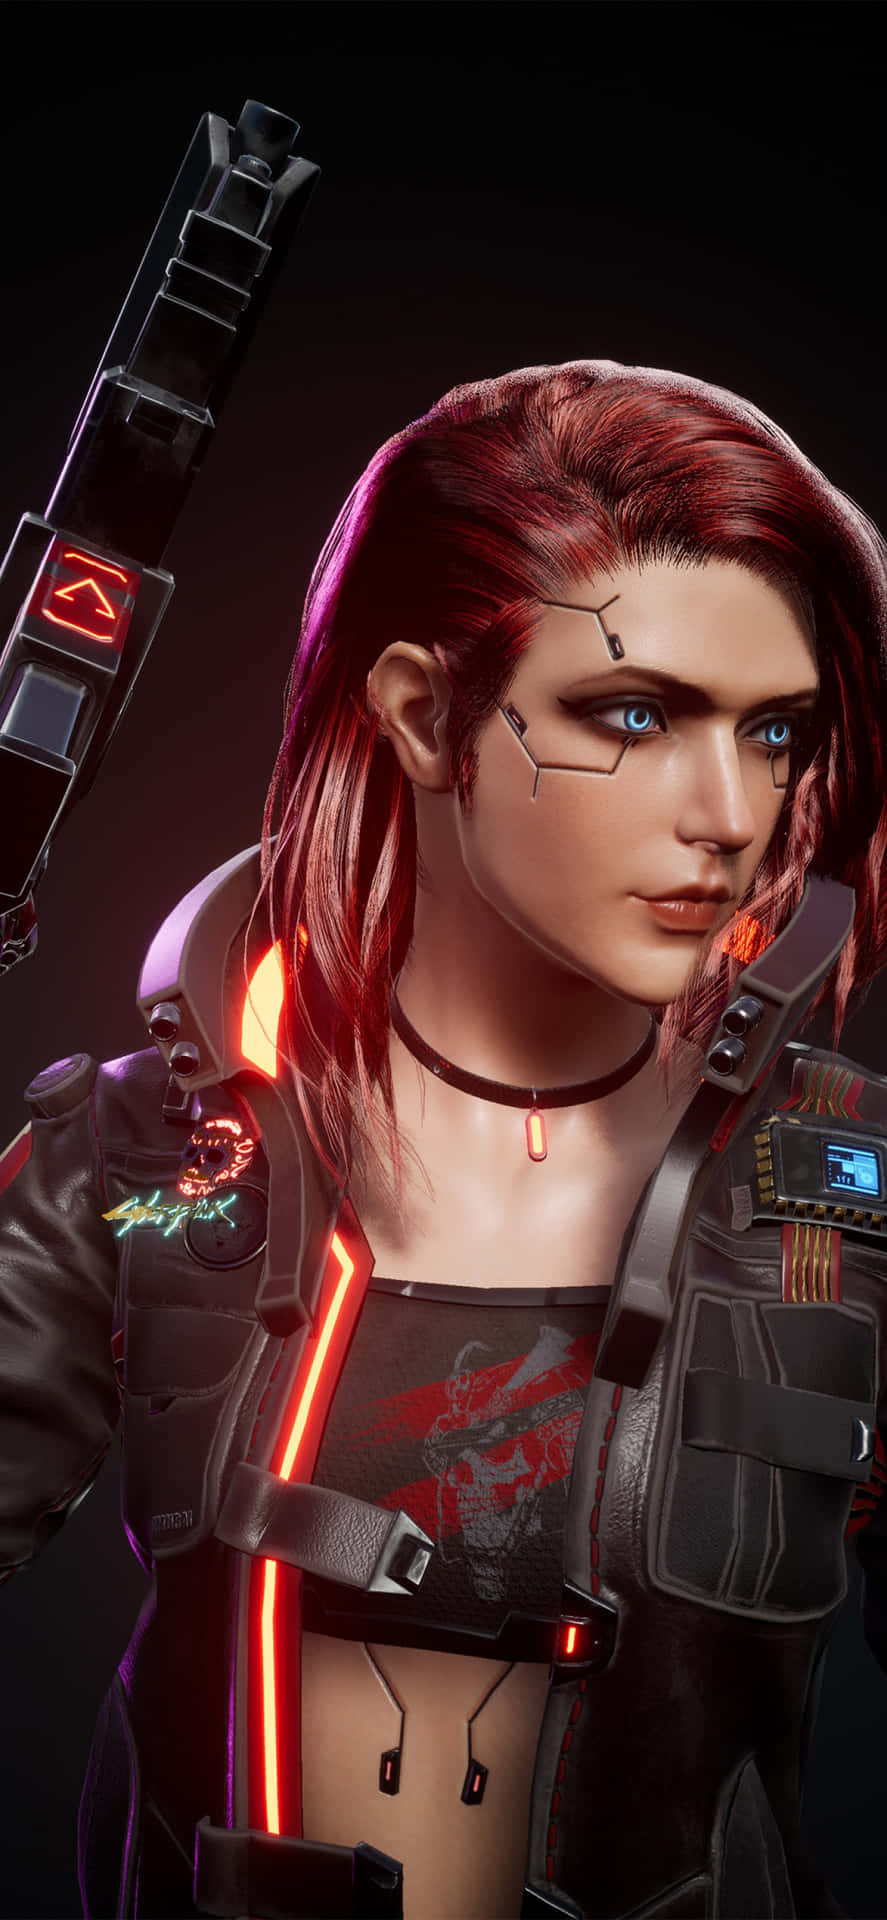 iPhone X Cyberpunk 2077 baggrund tilpasset tegn med rødt hår